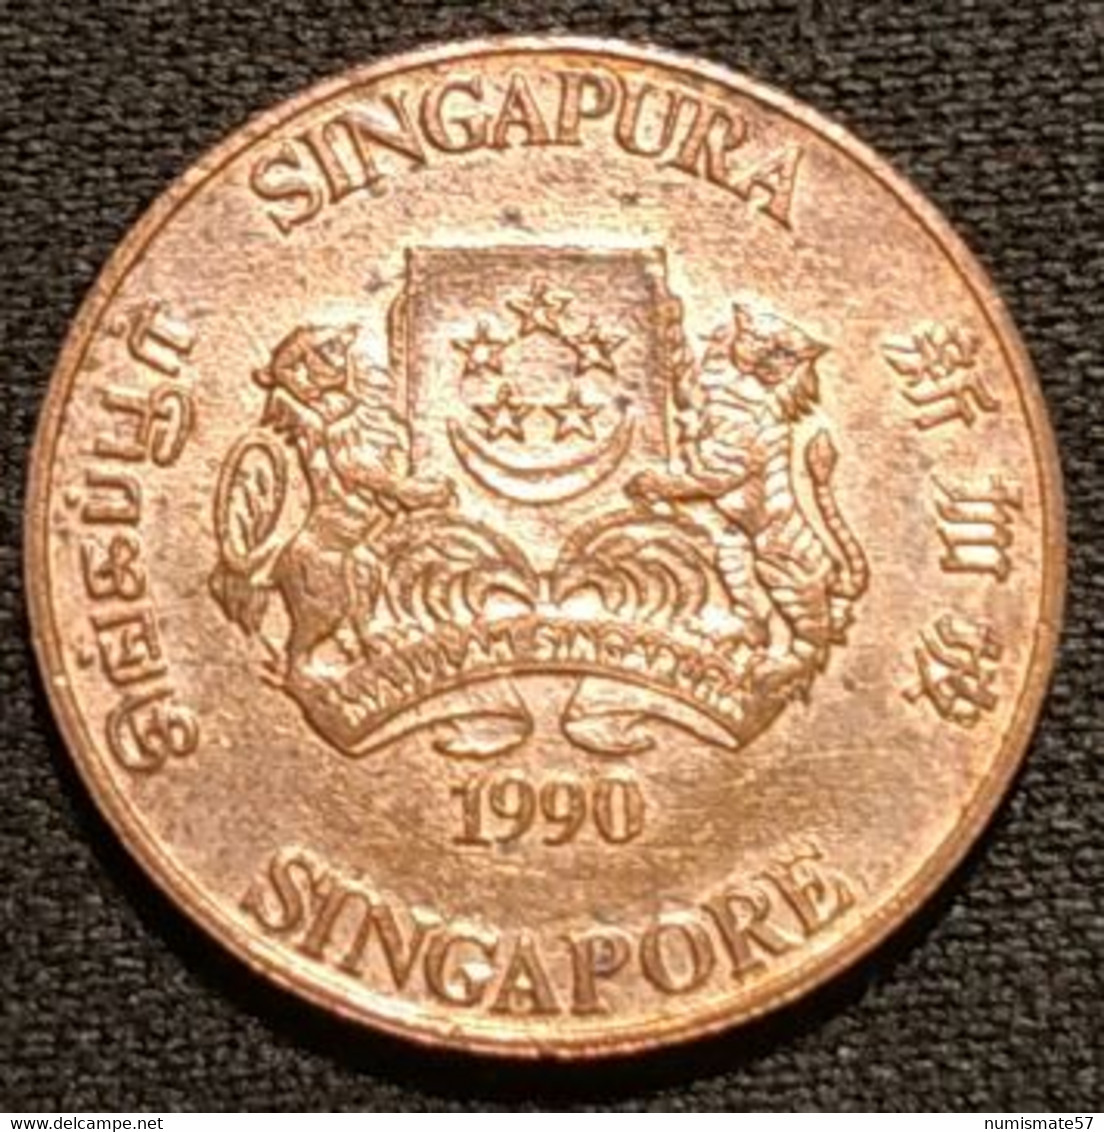 SINGAPOUR - SINGAPORE - 1 CENT 1990 - KM 49 - ( Blason Haut ) - Singapour